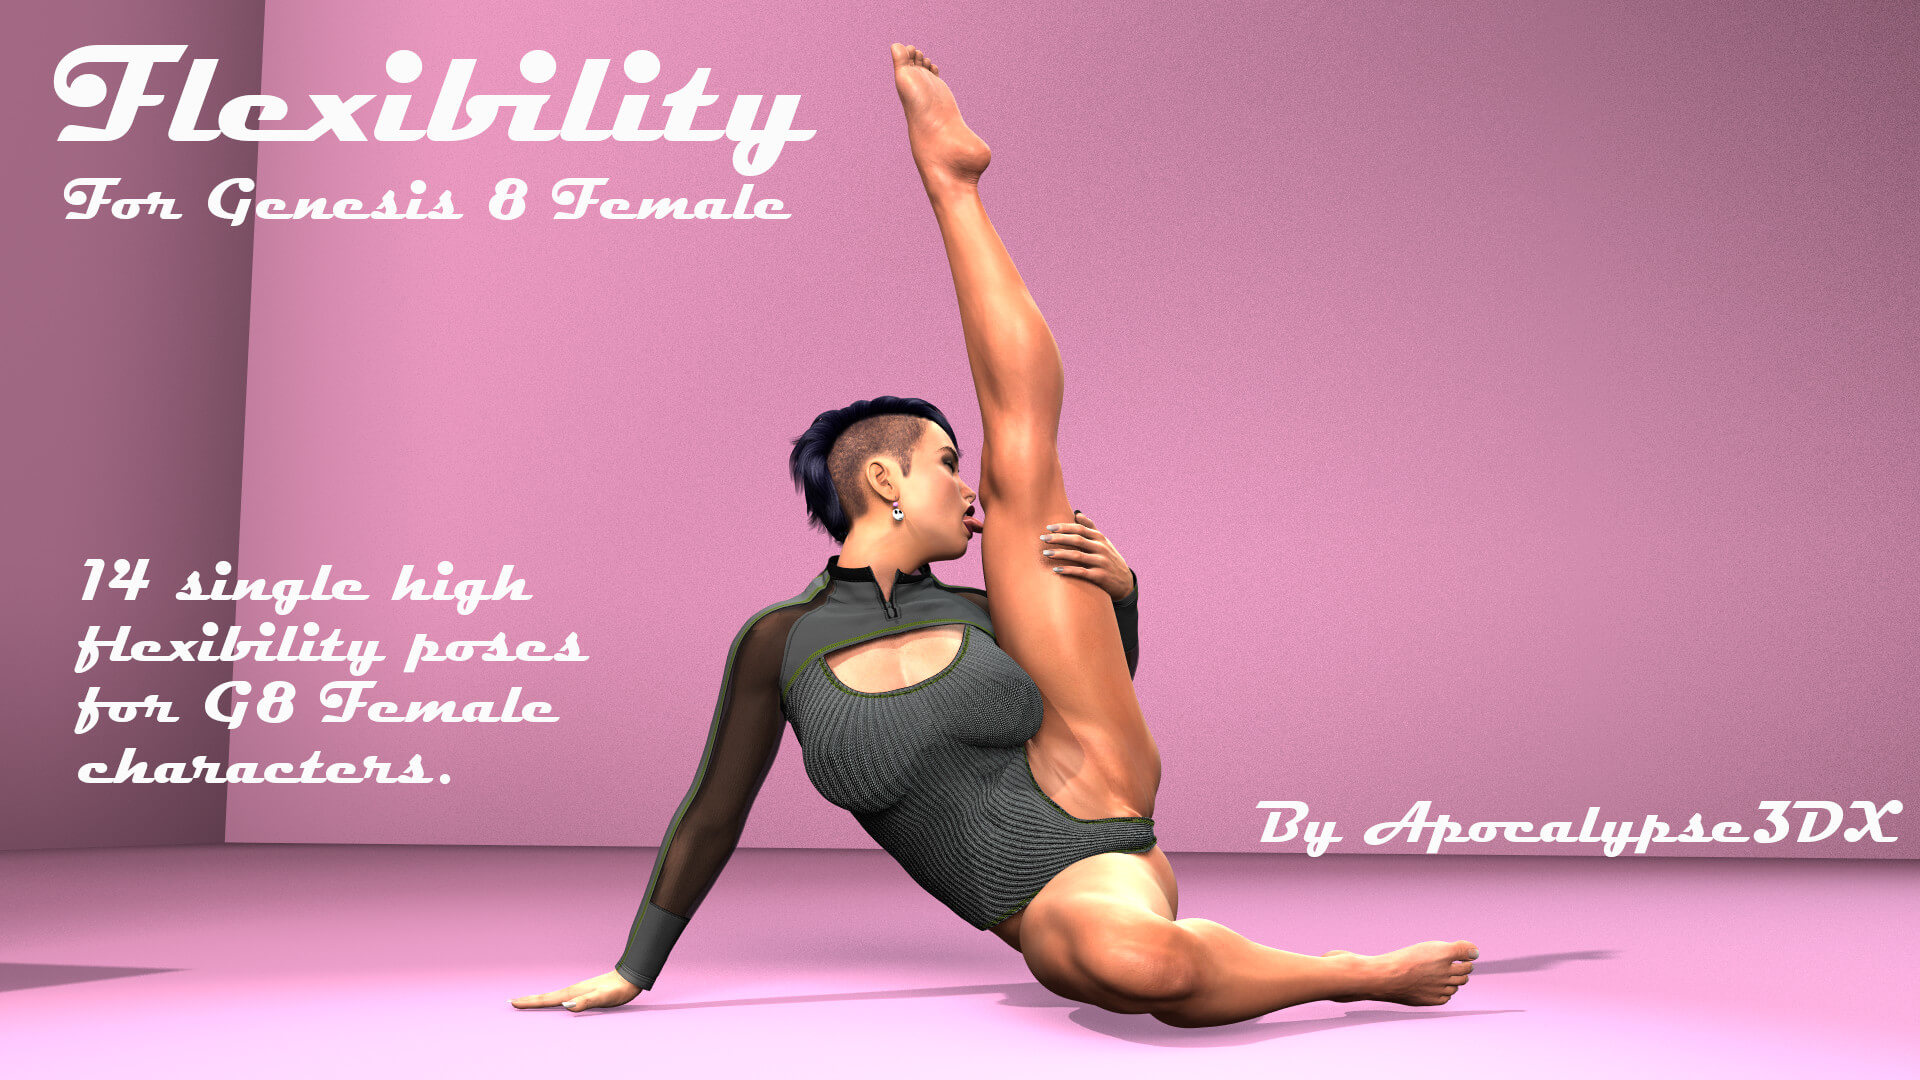 flexibility for genesis 8 01 1711473827